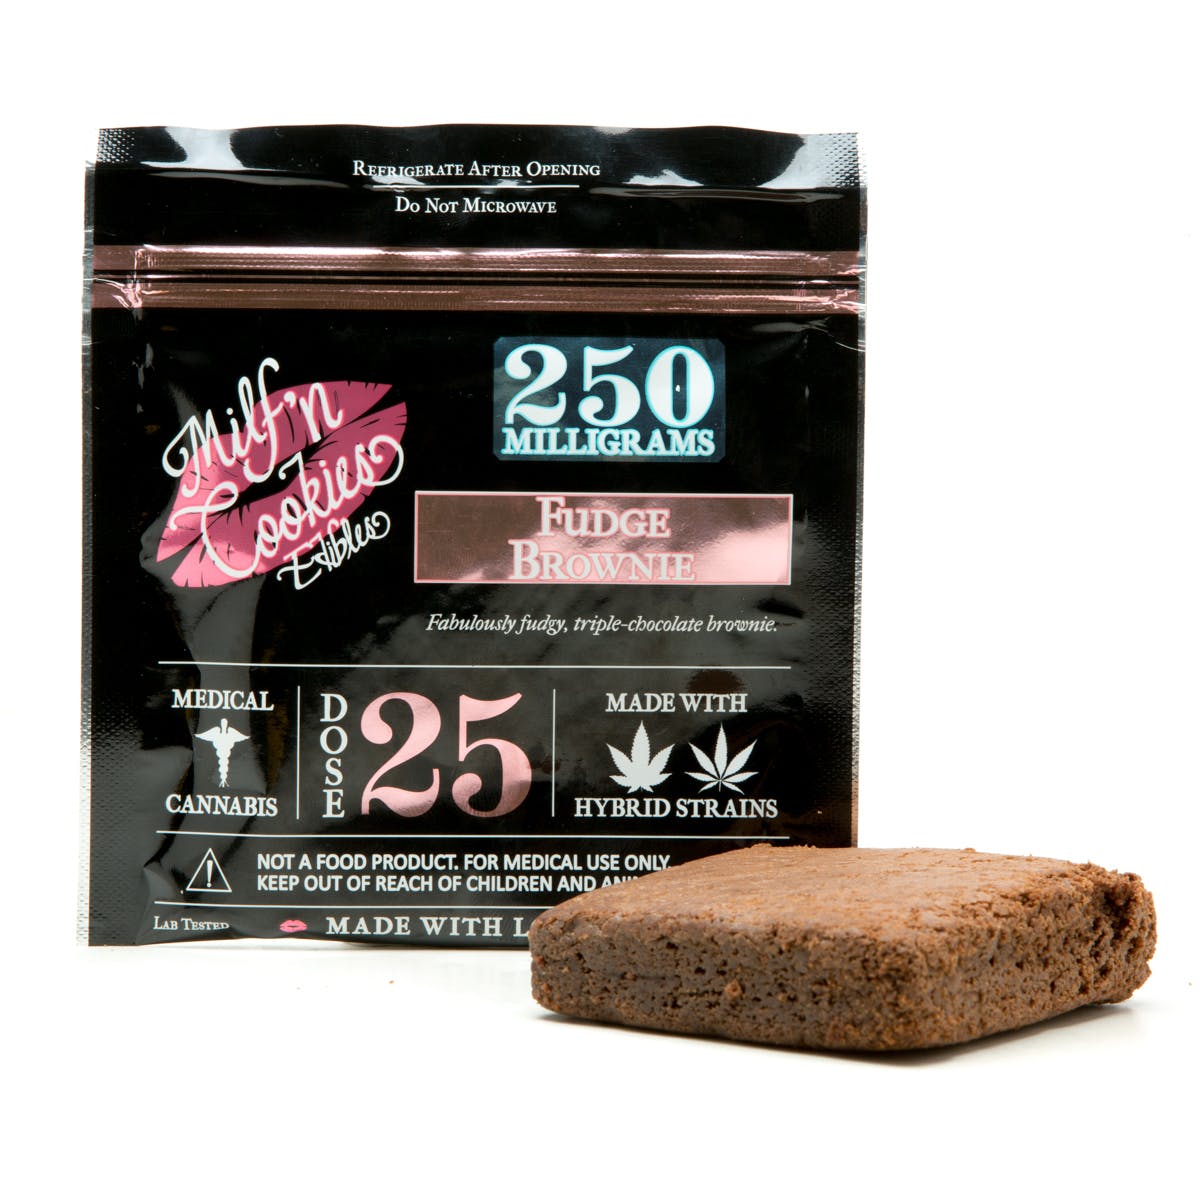 marijuana-dispensaries-organic-solutions-whittier-in-whittier-fudge-brownie-250mg